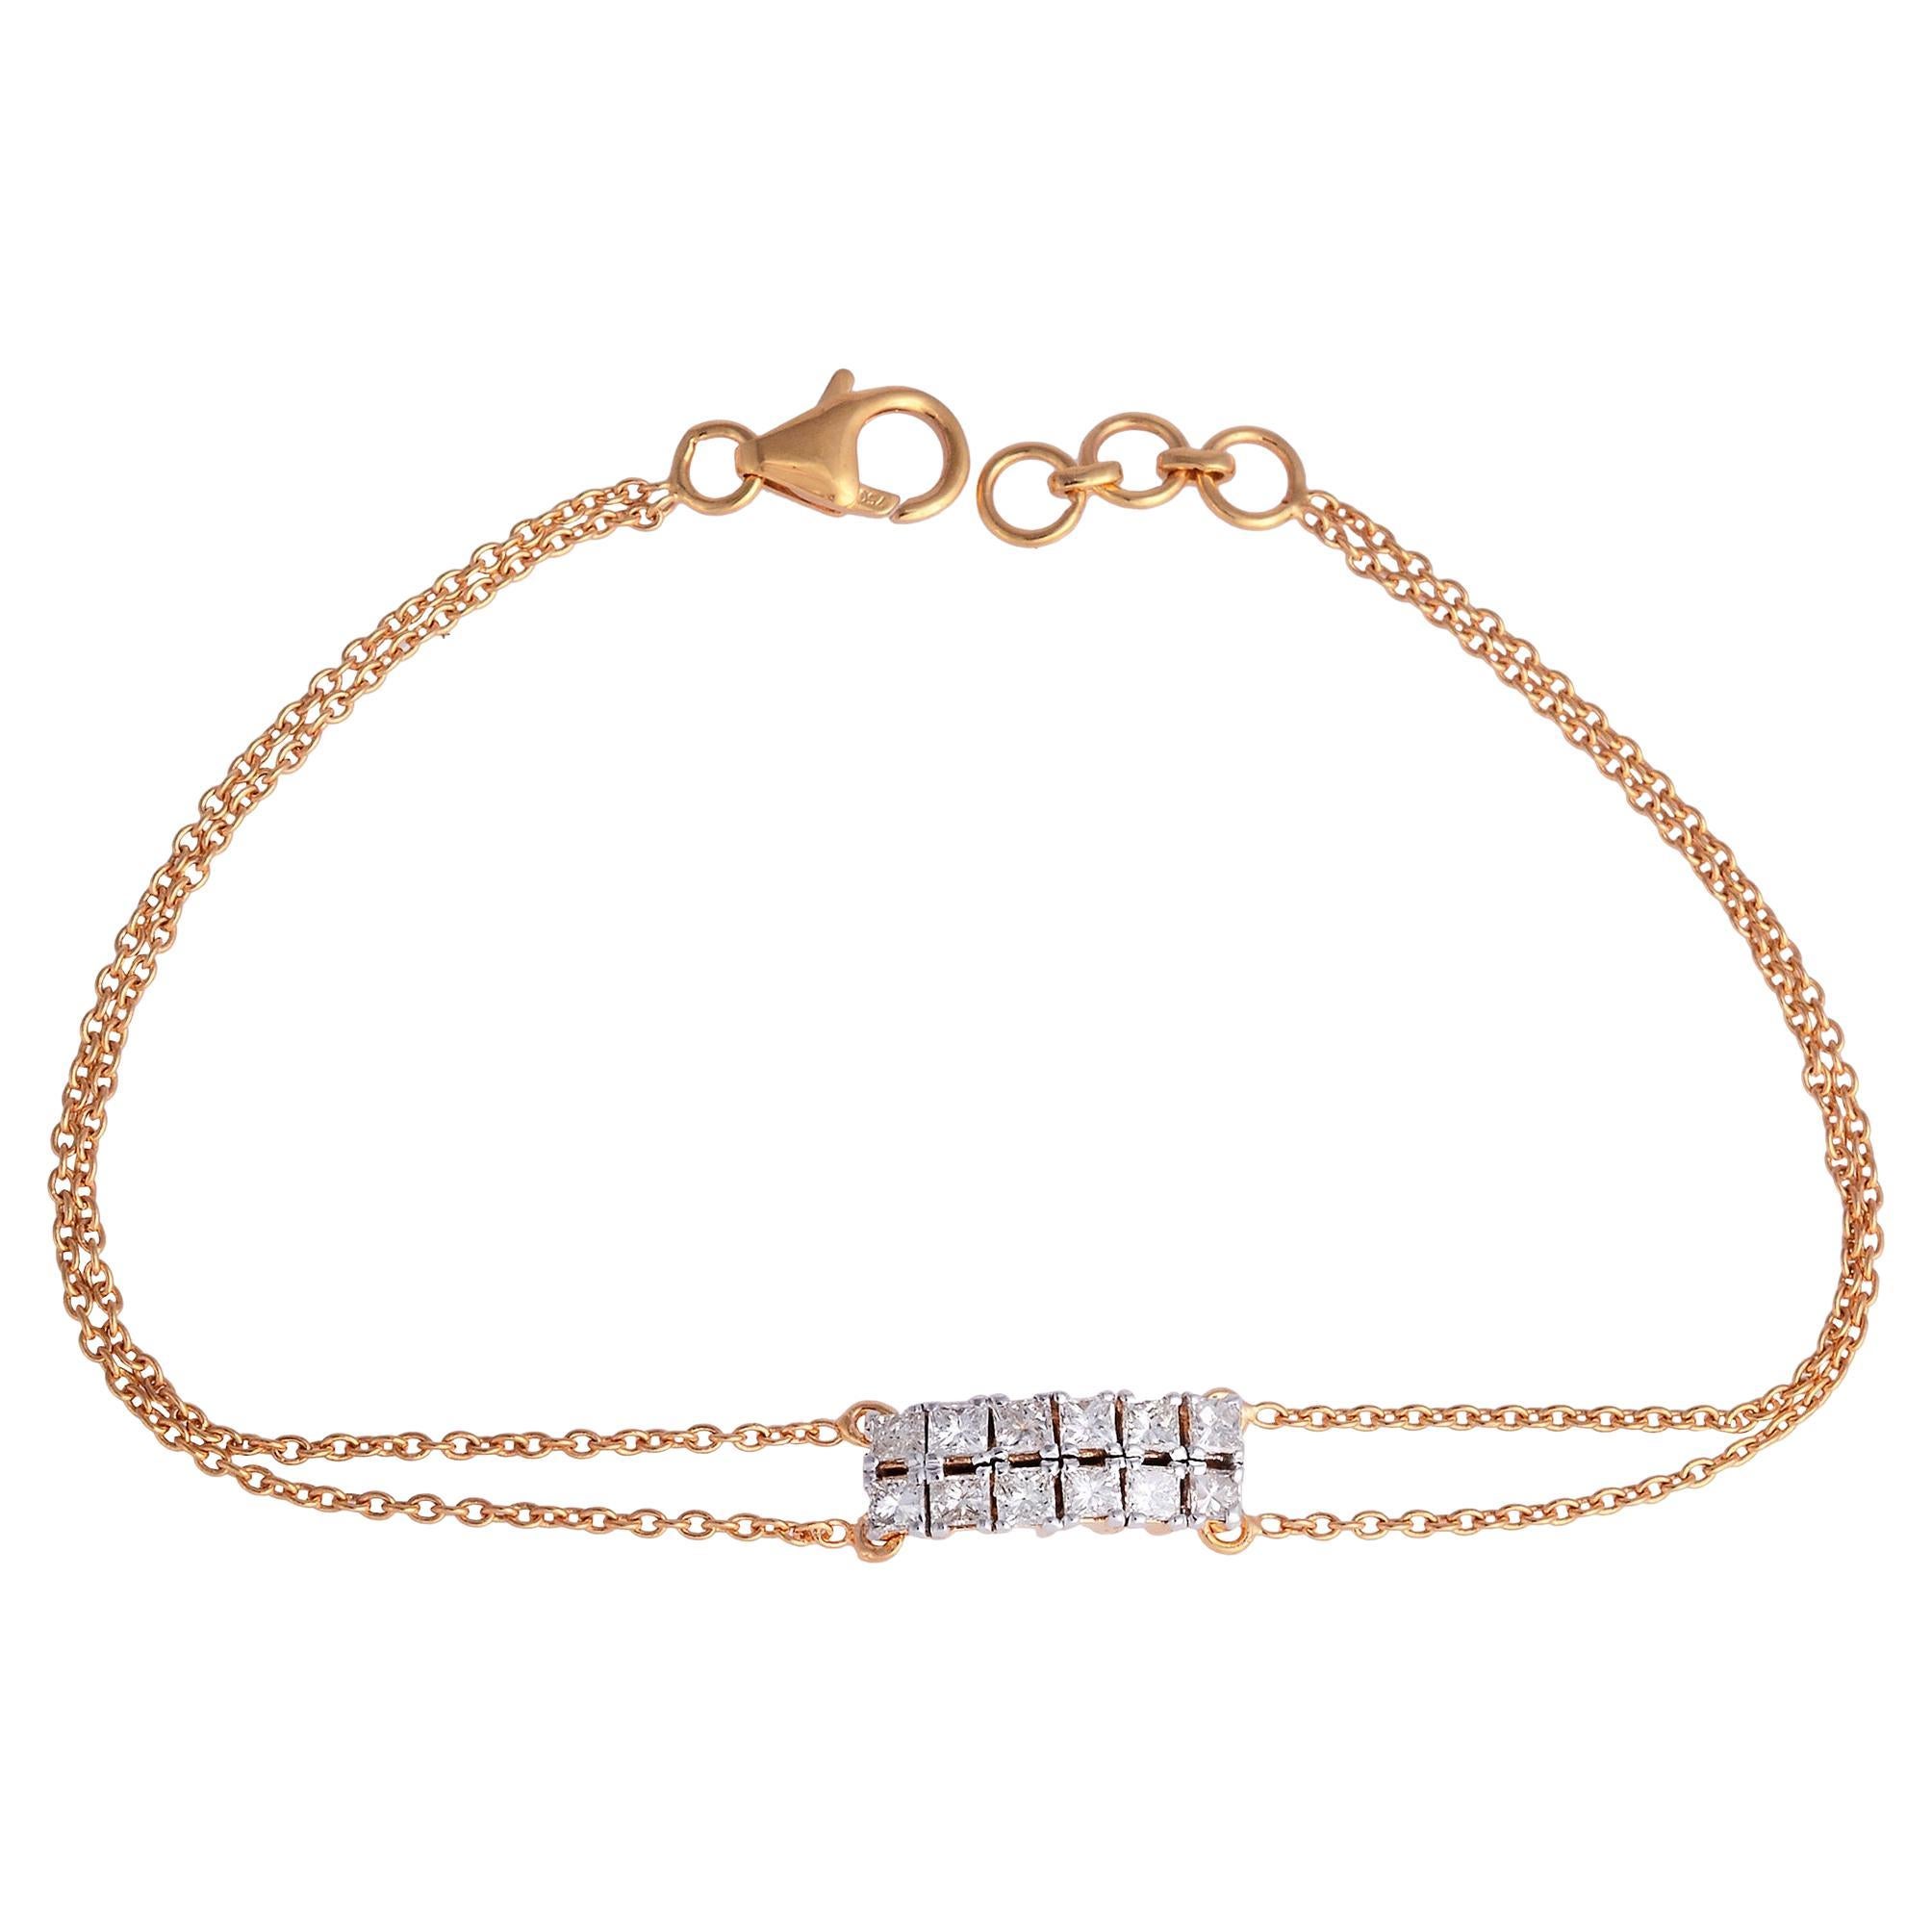 0.90 Carat Princess Cut Diamond Bracelet Solid 14 Karat Rose Gold Fine Jewelry For Sale